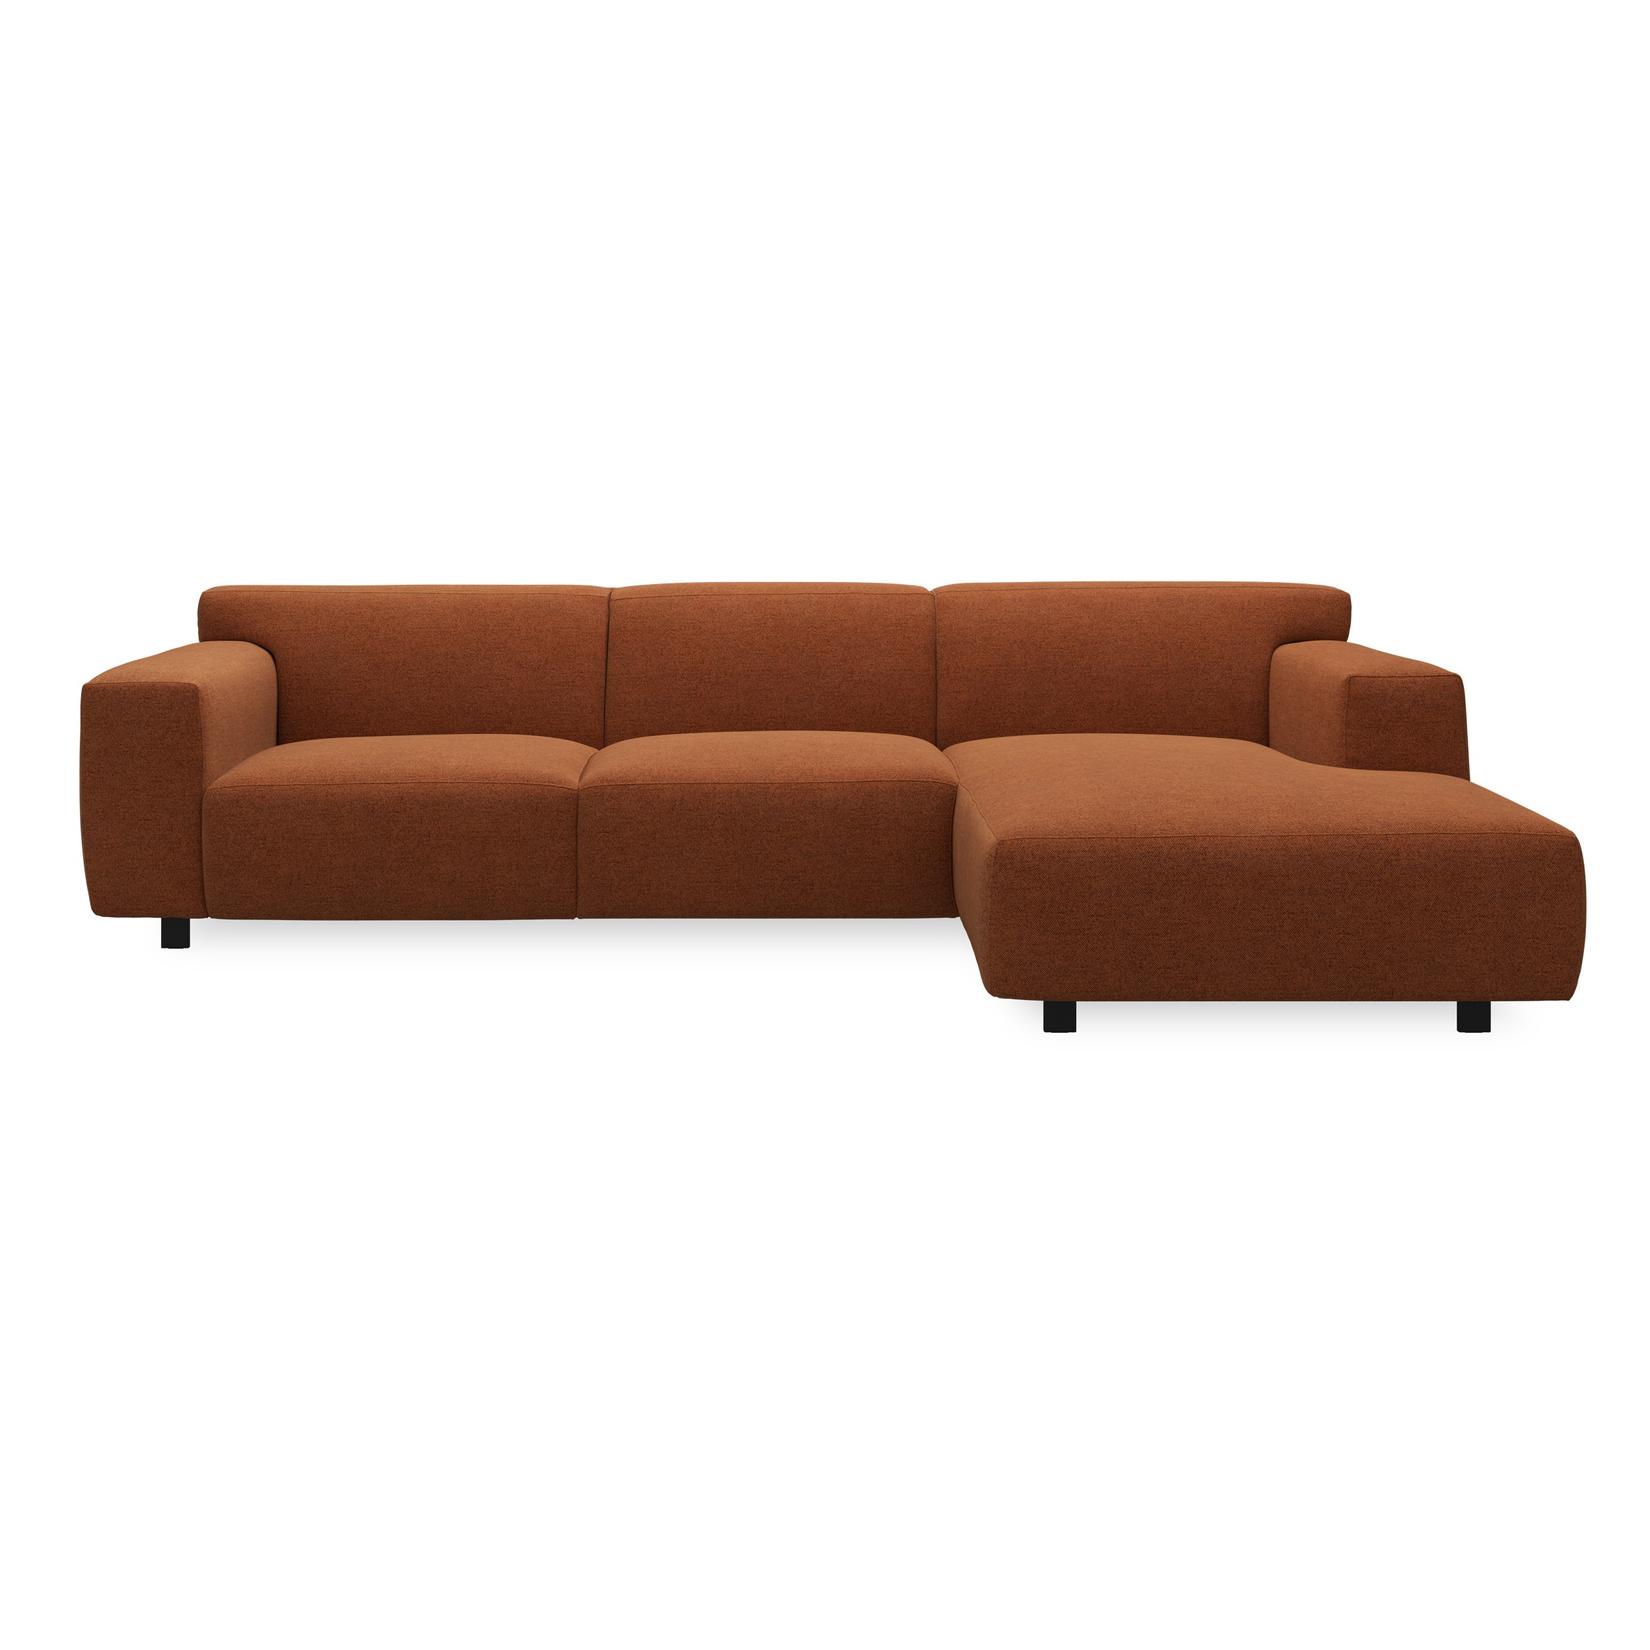 Siena højrevendt sofa med chaiselong på tilbud til 14399,4 kr. hos Ilva